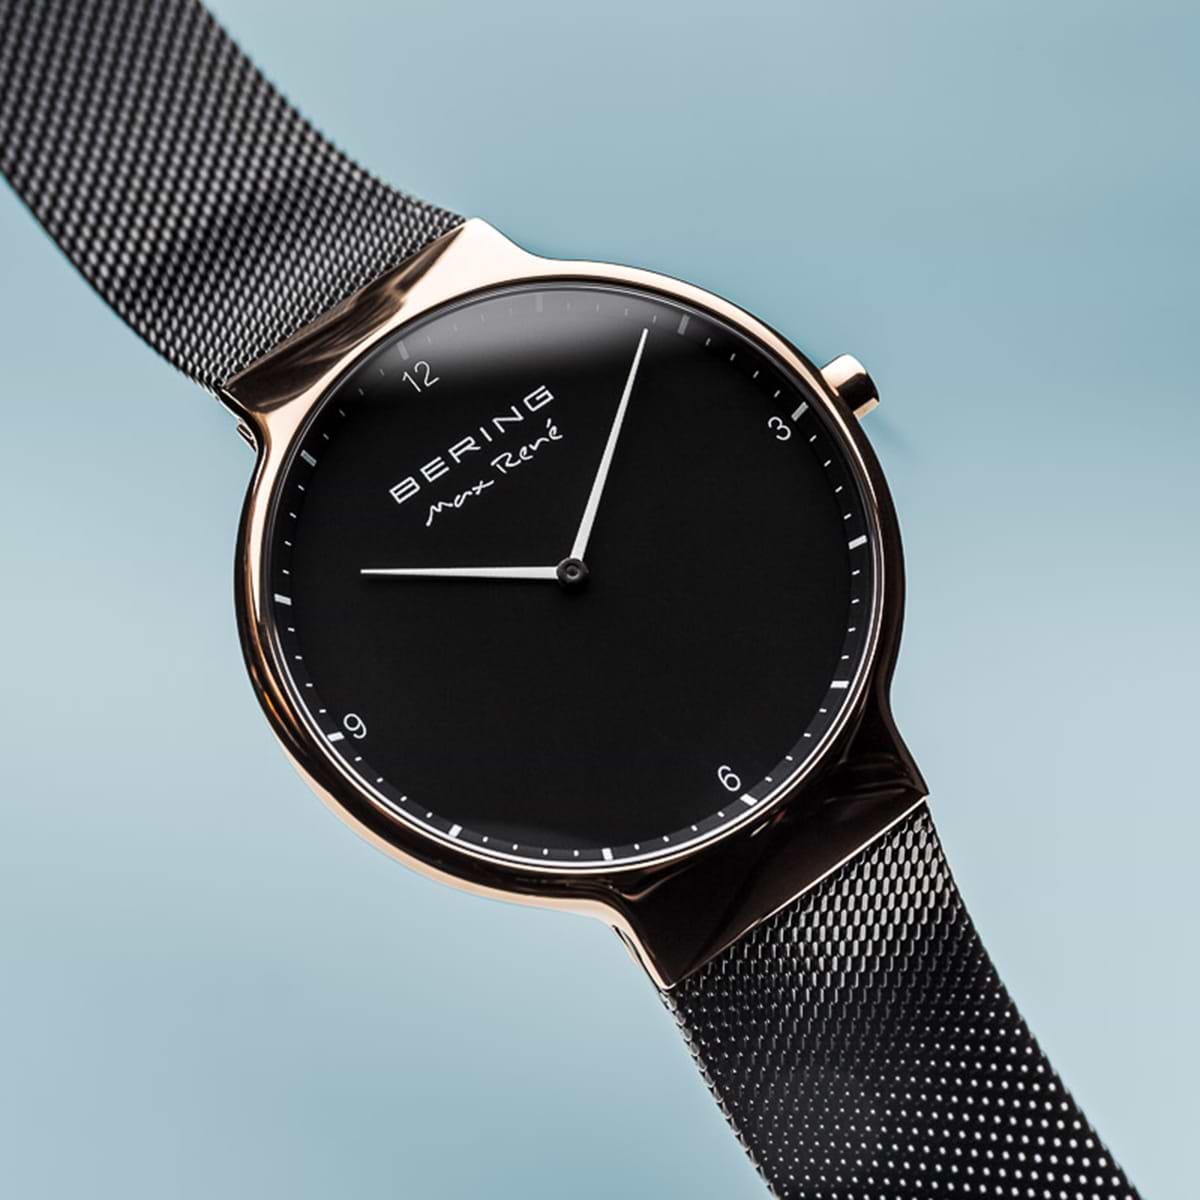 שעון יד לאישה Bering 15540-262 40mm צבע שחור - אחריות לשנה ע"י היבואן